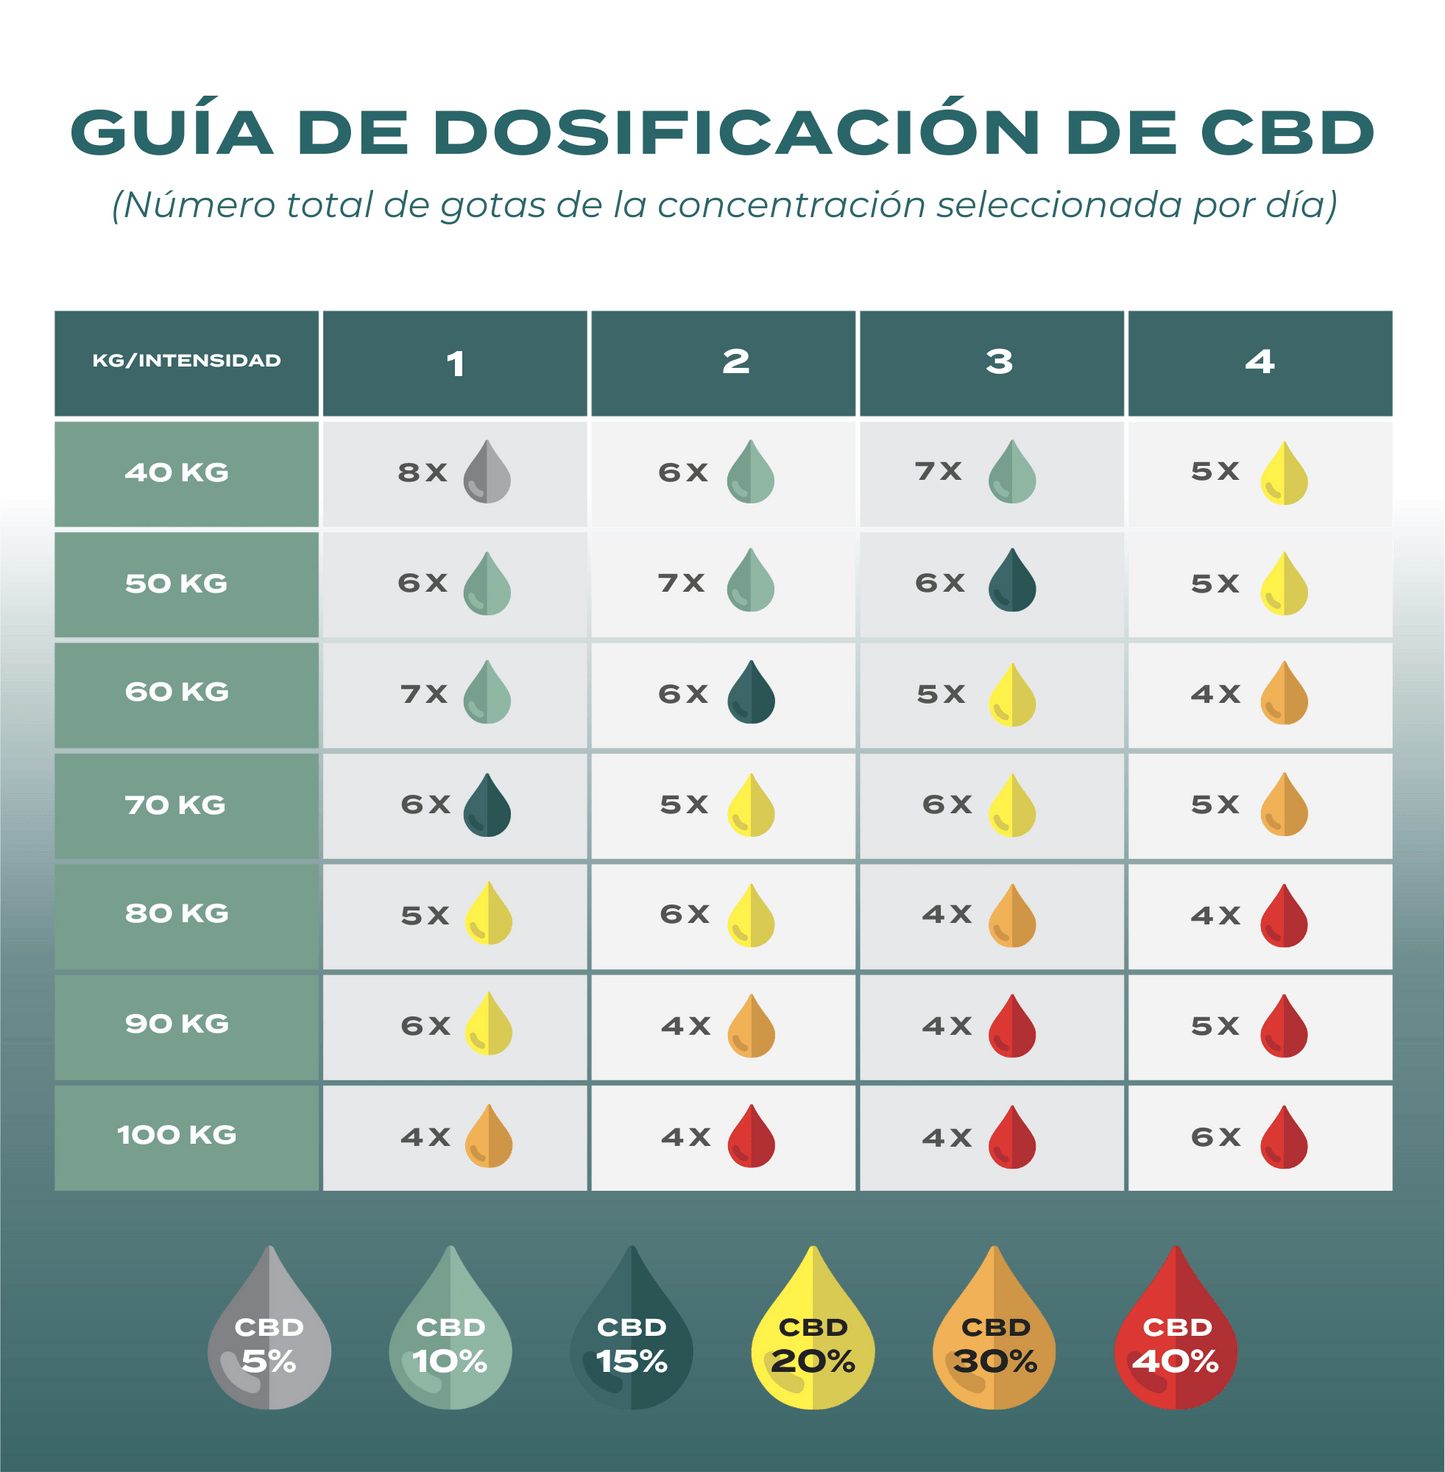 Guía de dosificación aceite de CBD